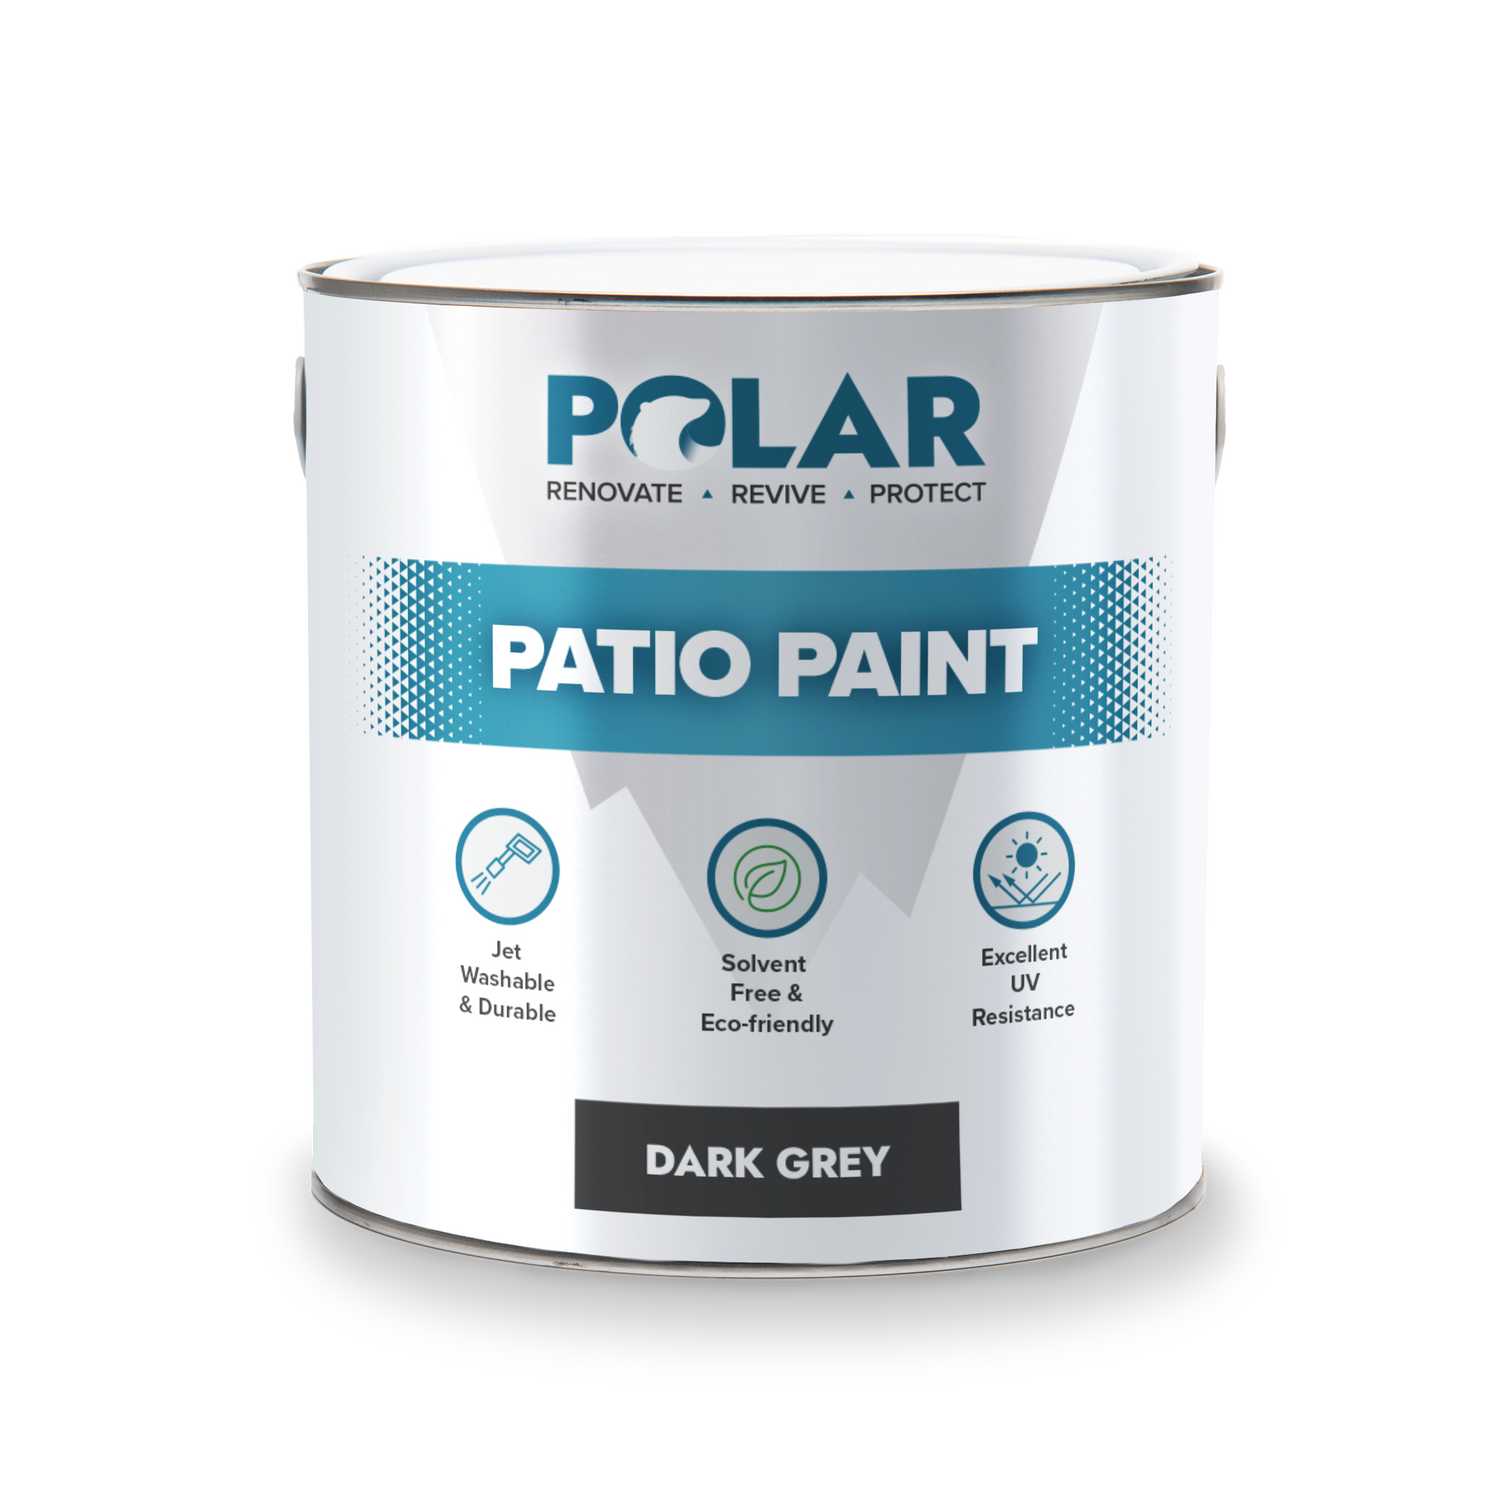 patio floor paint